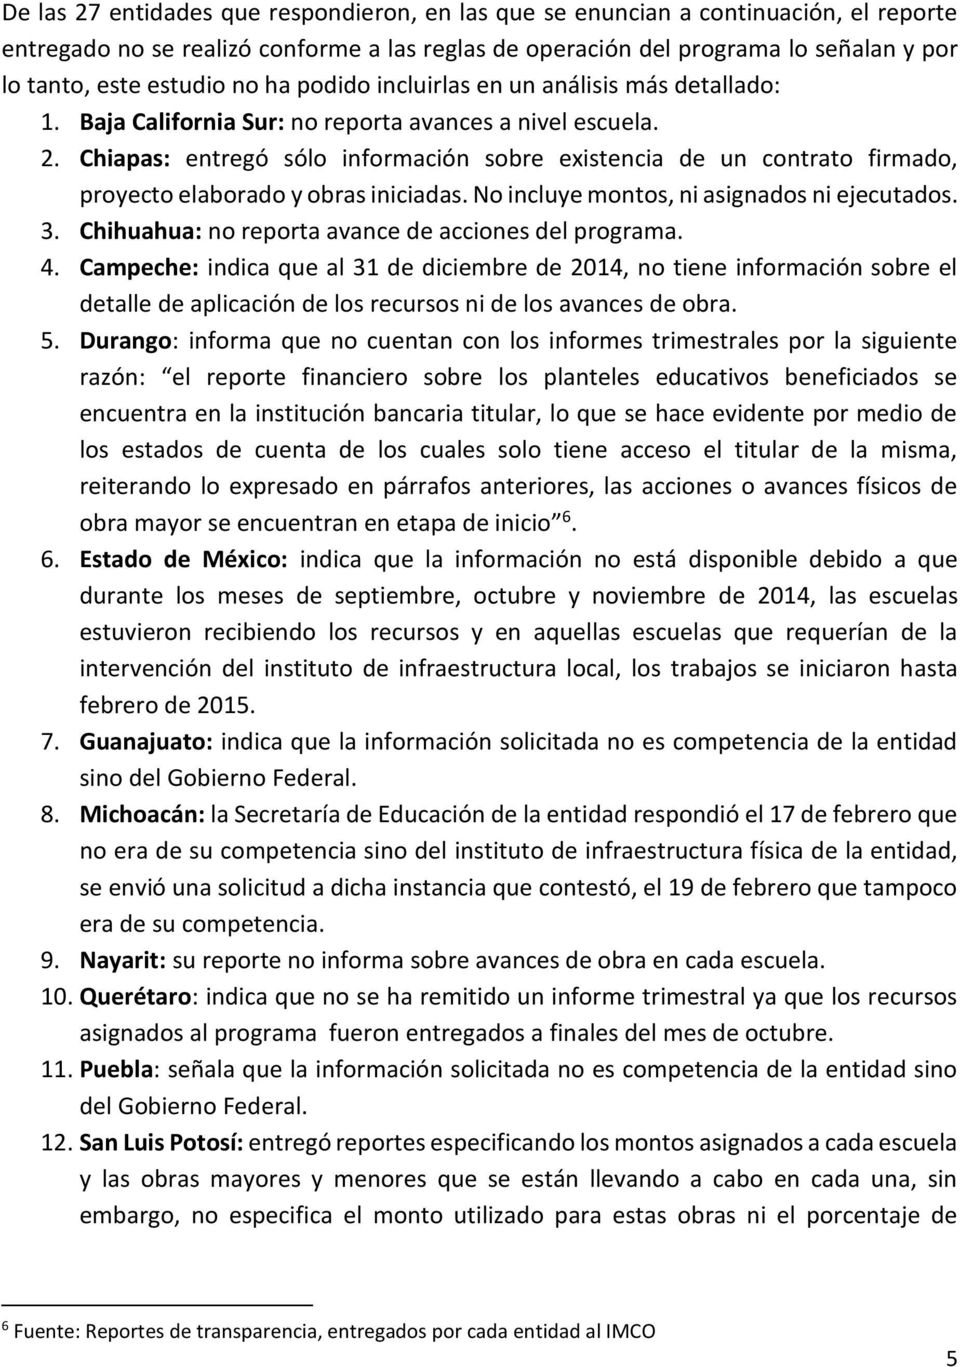 Chiapas: entregó sólo información sobre existencia de un contrato firmado, proyecto elaborado y obras iniciadas. No incluye montos, ni asignados ni ejecutados. 3.